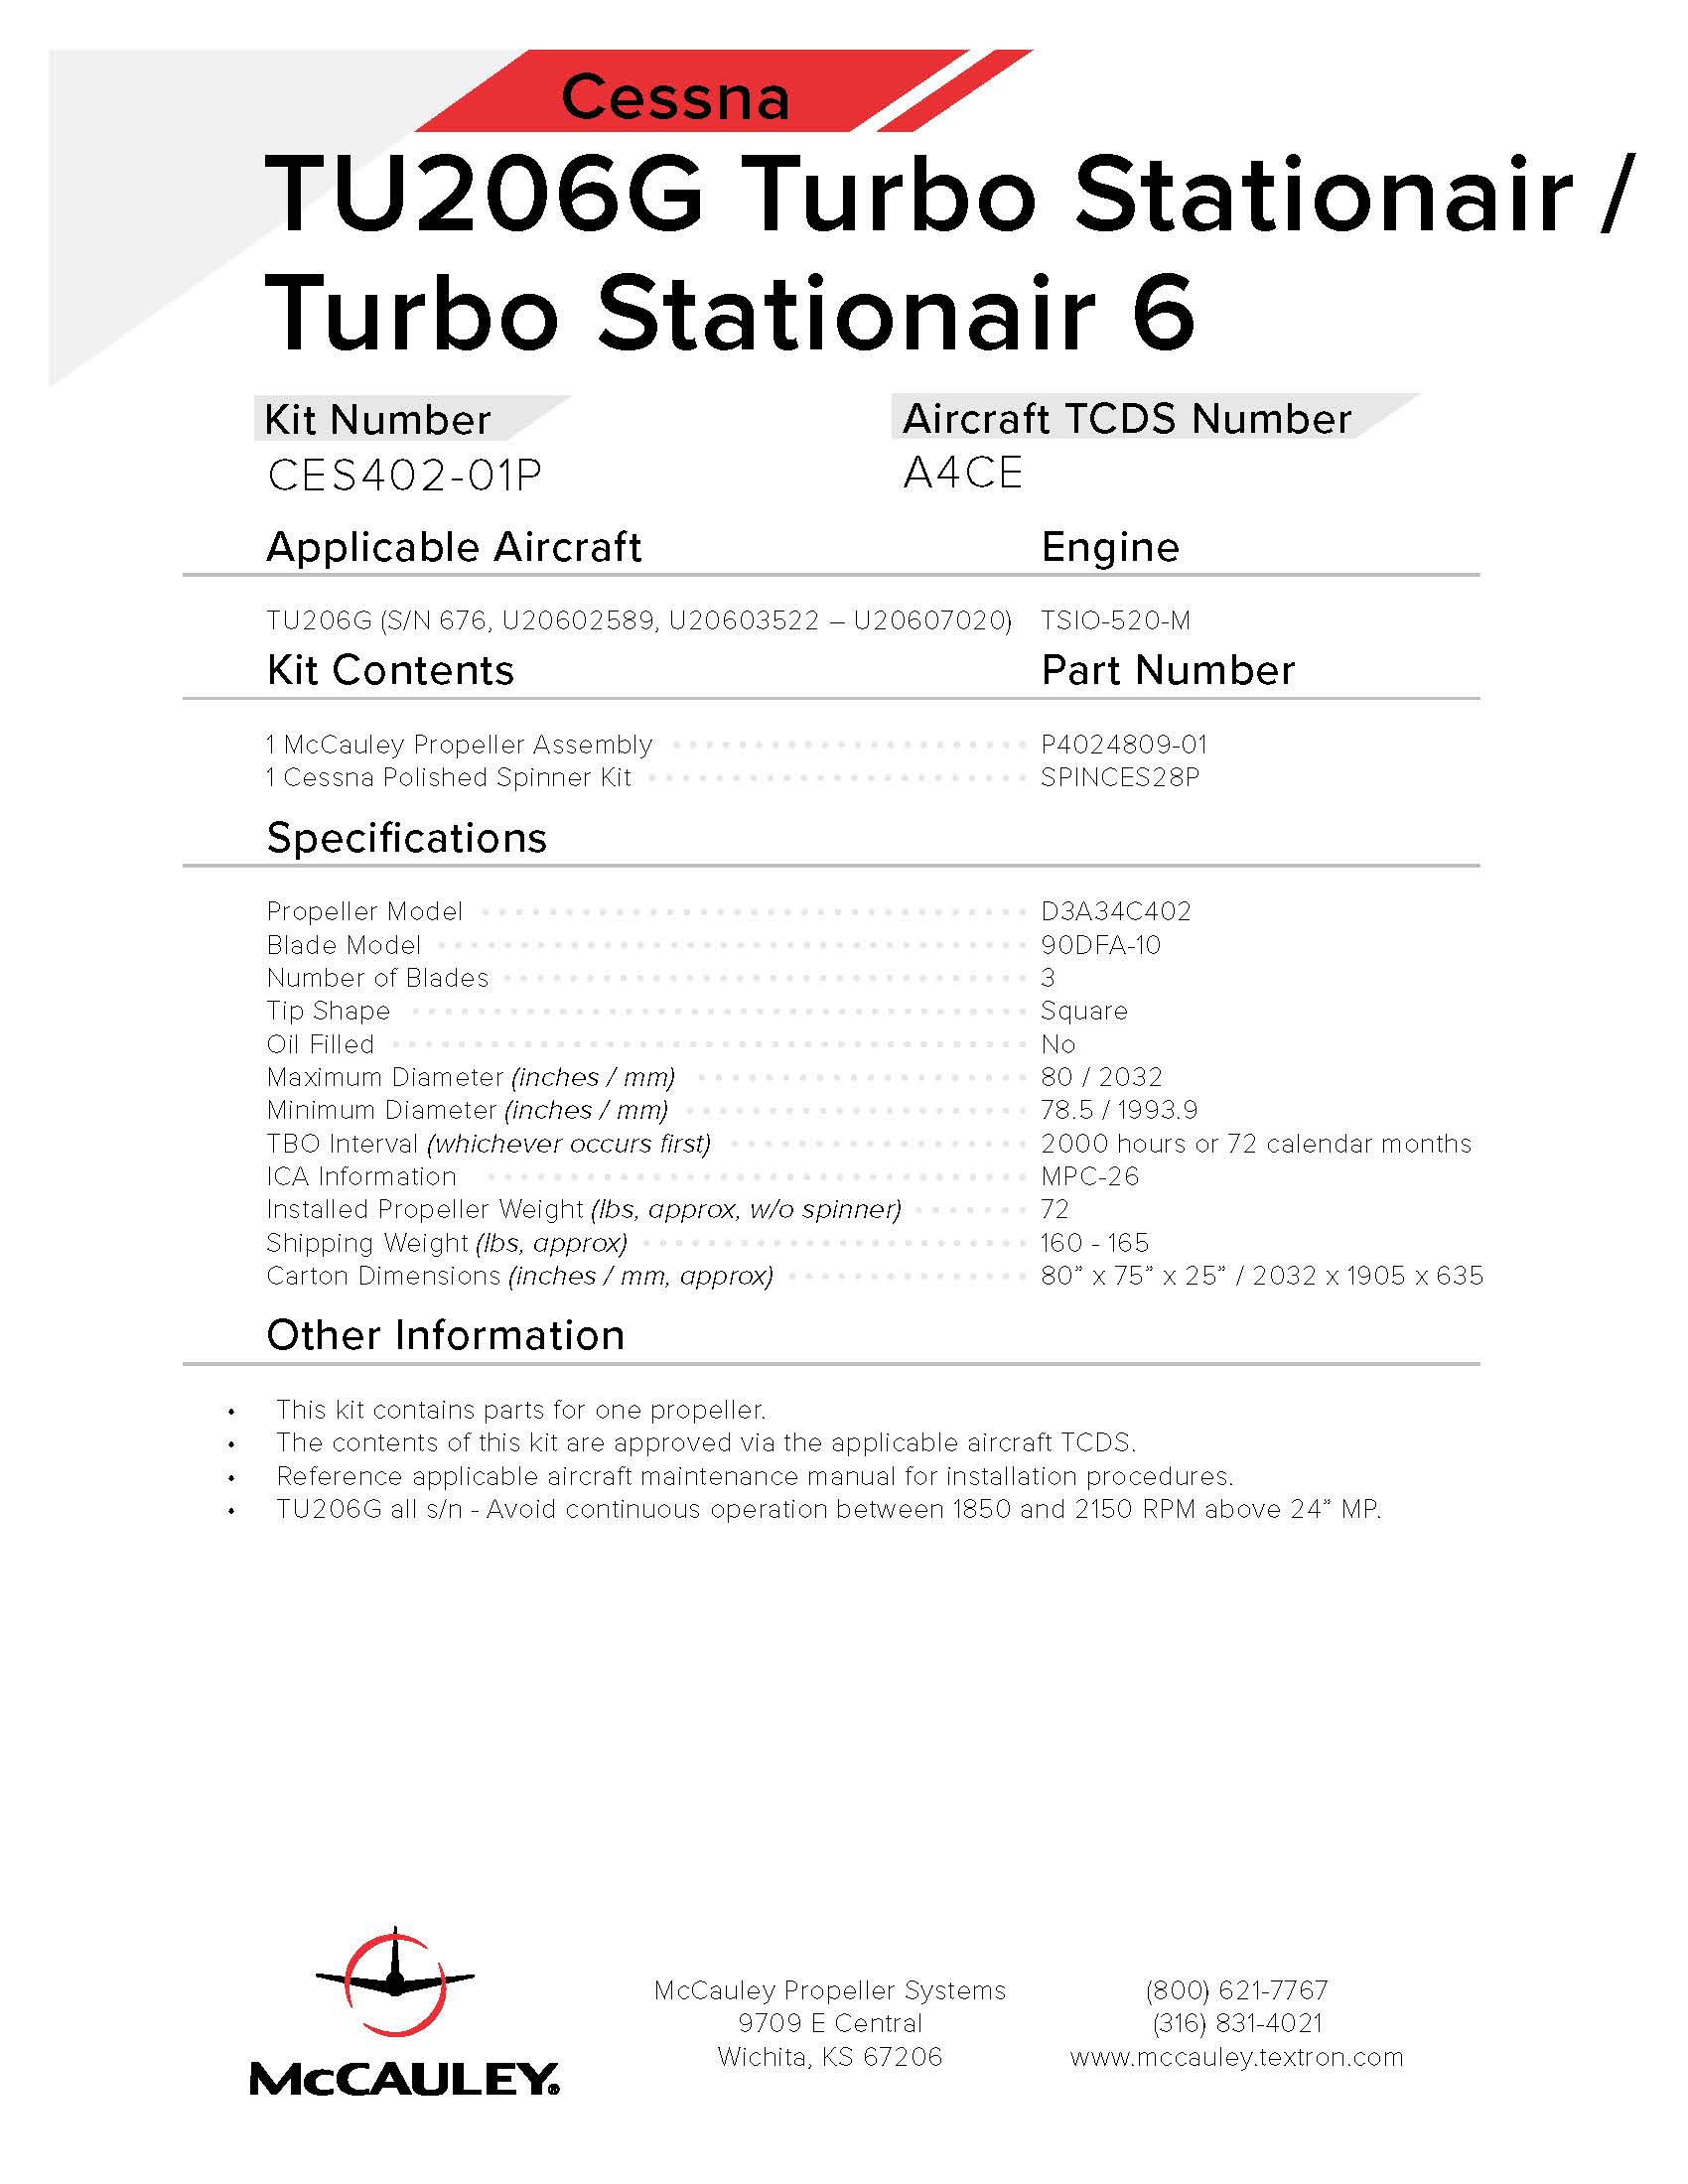 CESSNA-TU206G-TURBO-STATIONAIR-6-CES402-01P-PAGE-1